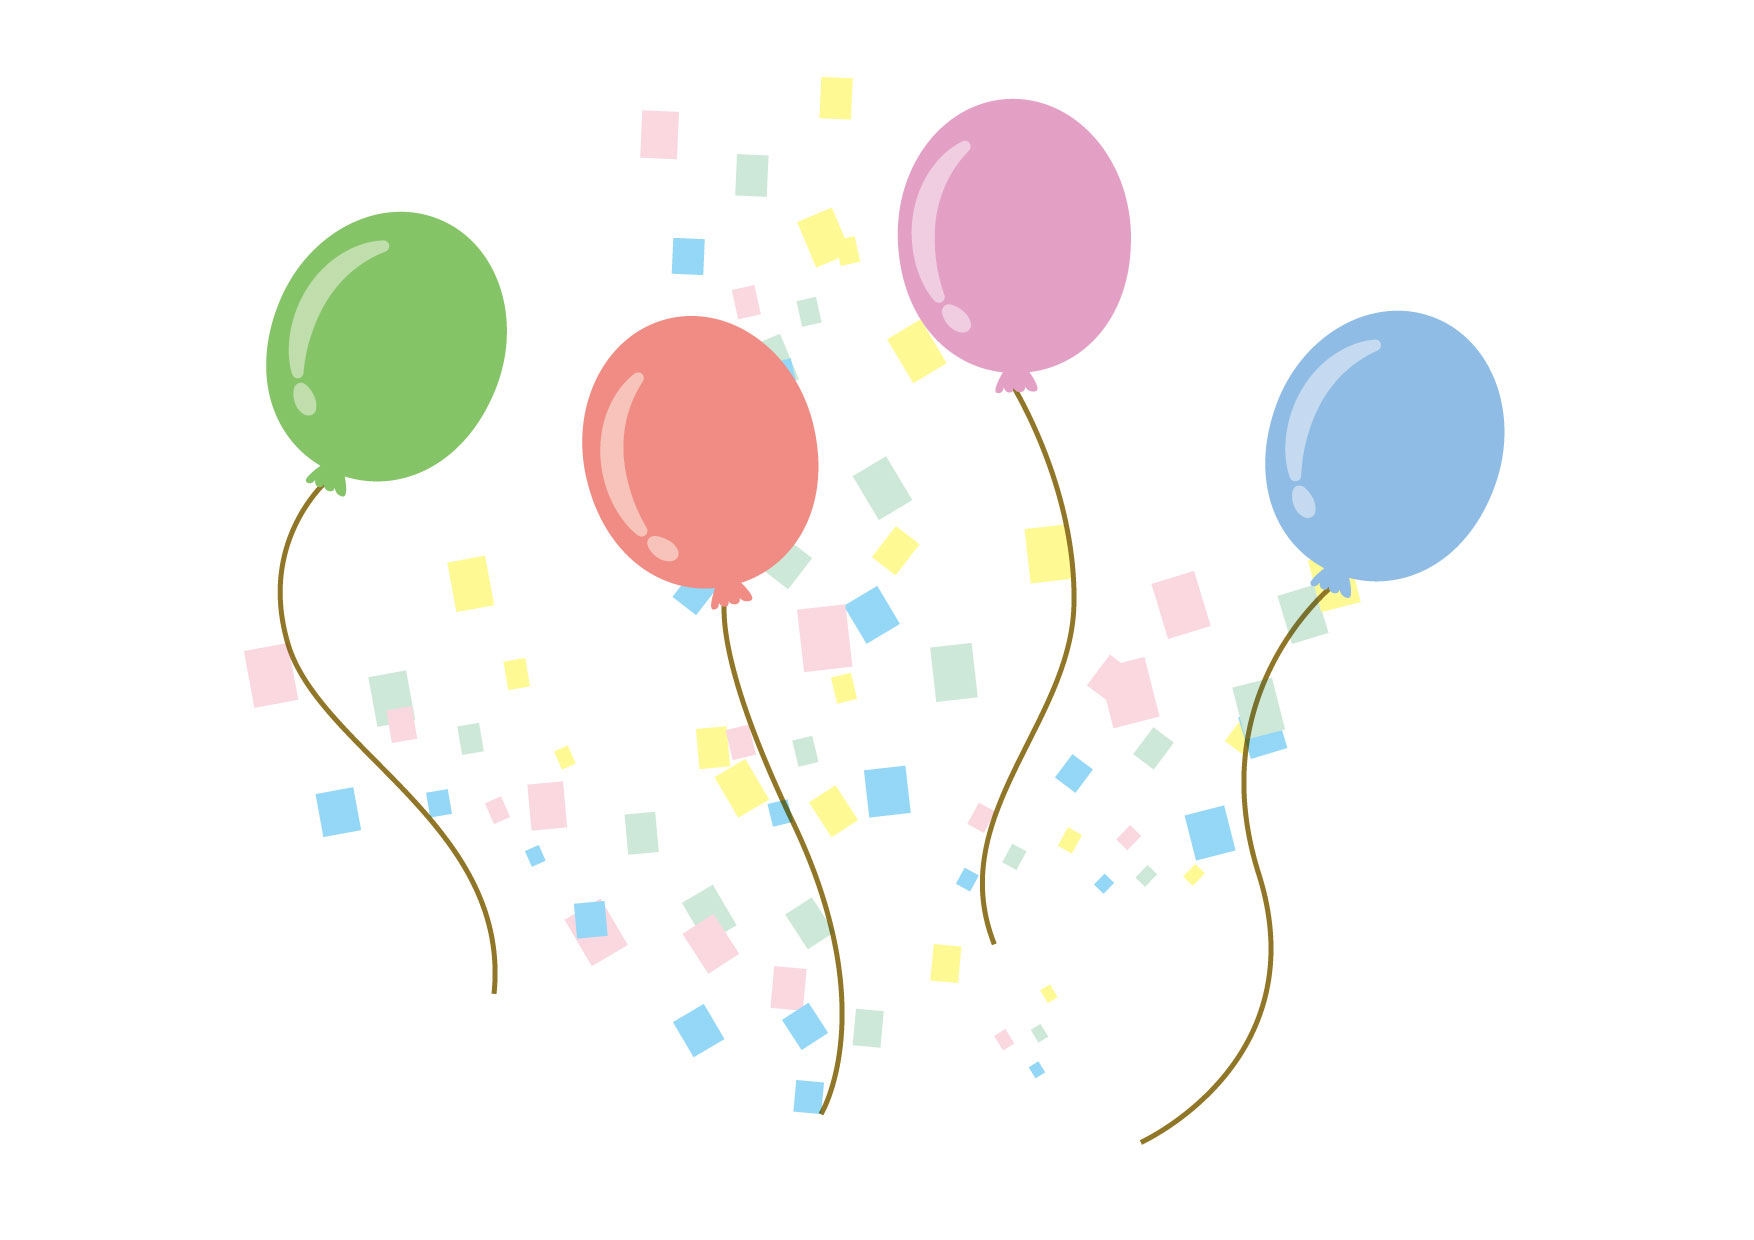 可愛いイラスト無料 風船 紙吹雪 Free Illustration Balloons Confetti 公式 イラスト素材サイト イラスト ダウンロード